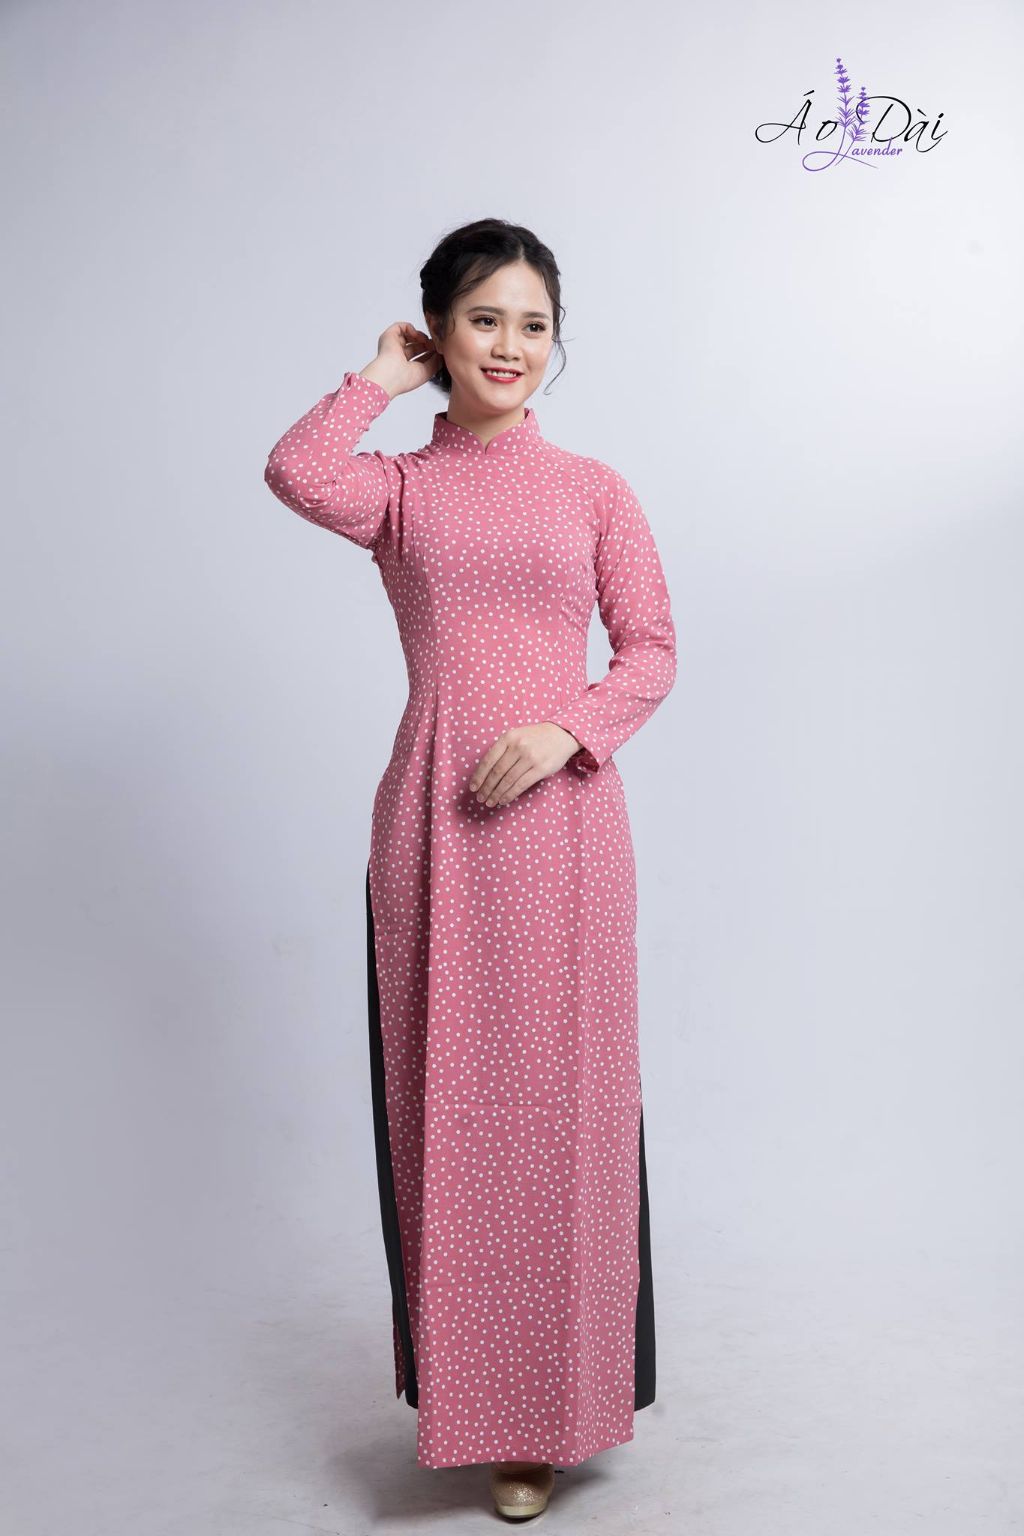 Dịch vụ cho thuê áo dài Tết ở Hà Nội - Trang phục truyền thống của phụ nữ ngày Tết